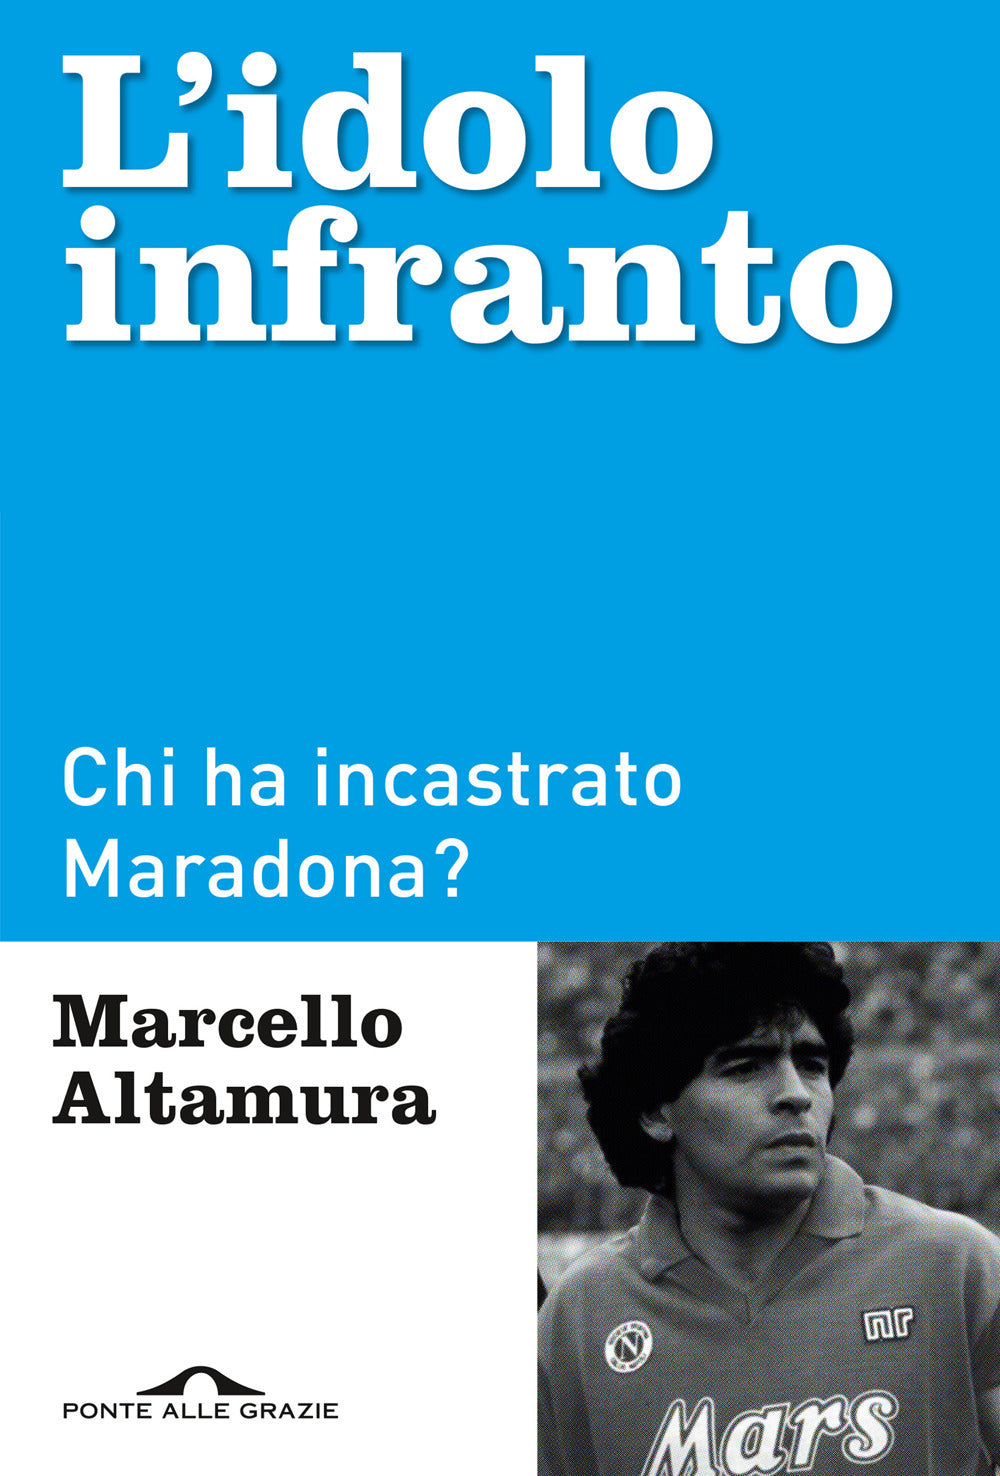 L'idolo infranto. Chi ha incastrato Maradona?.